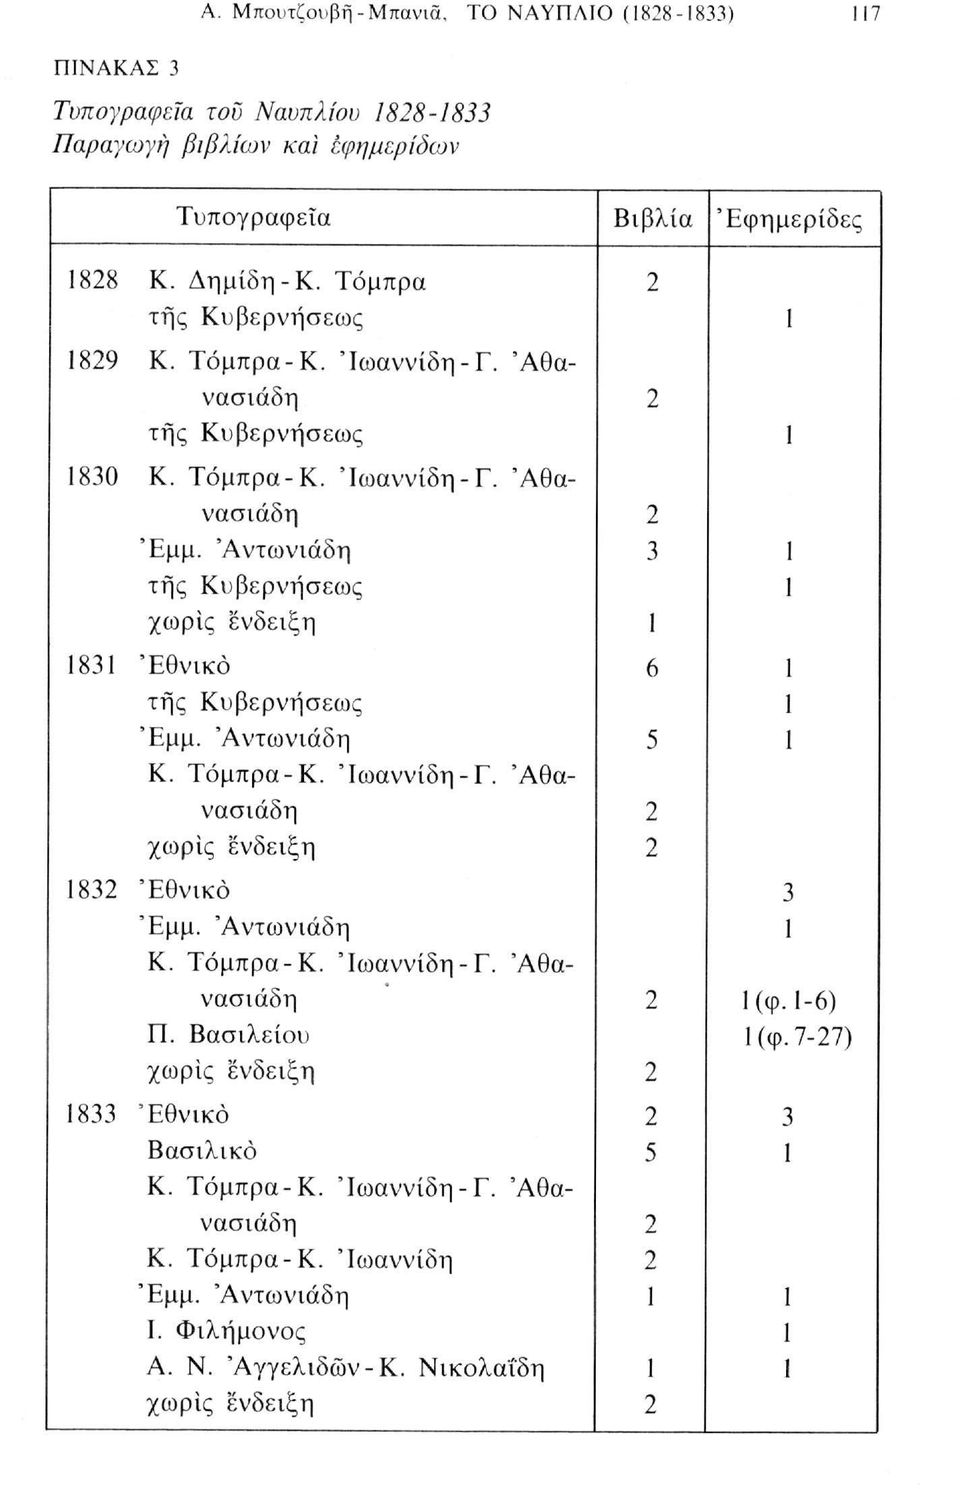 Τόμπρα-Κ. Ίωαννίδη-Γ. 'Αθανασιάδη χωρίς ένδειξη 1832 'Εθνικό Έμμ. 'Αντωνιάδη Κ. Τόμπρα-Κ. Ίωαννίδη-Γ. 'Αθανασιάδη Π. Βασιλείου χωρίς ένδειξη 1833 Εθνικό Βασιλικό Κ. Τόμπρα-Κ. Ίωαννίδη-Γ. 'Αθανασιάδη Κ.